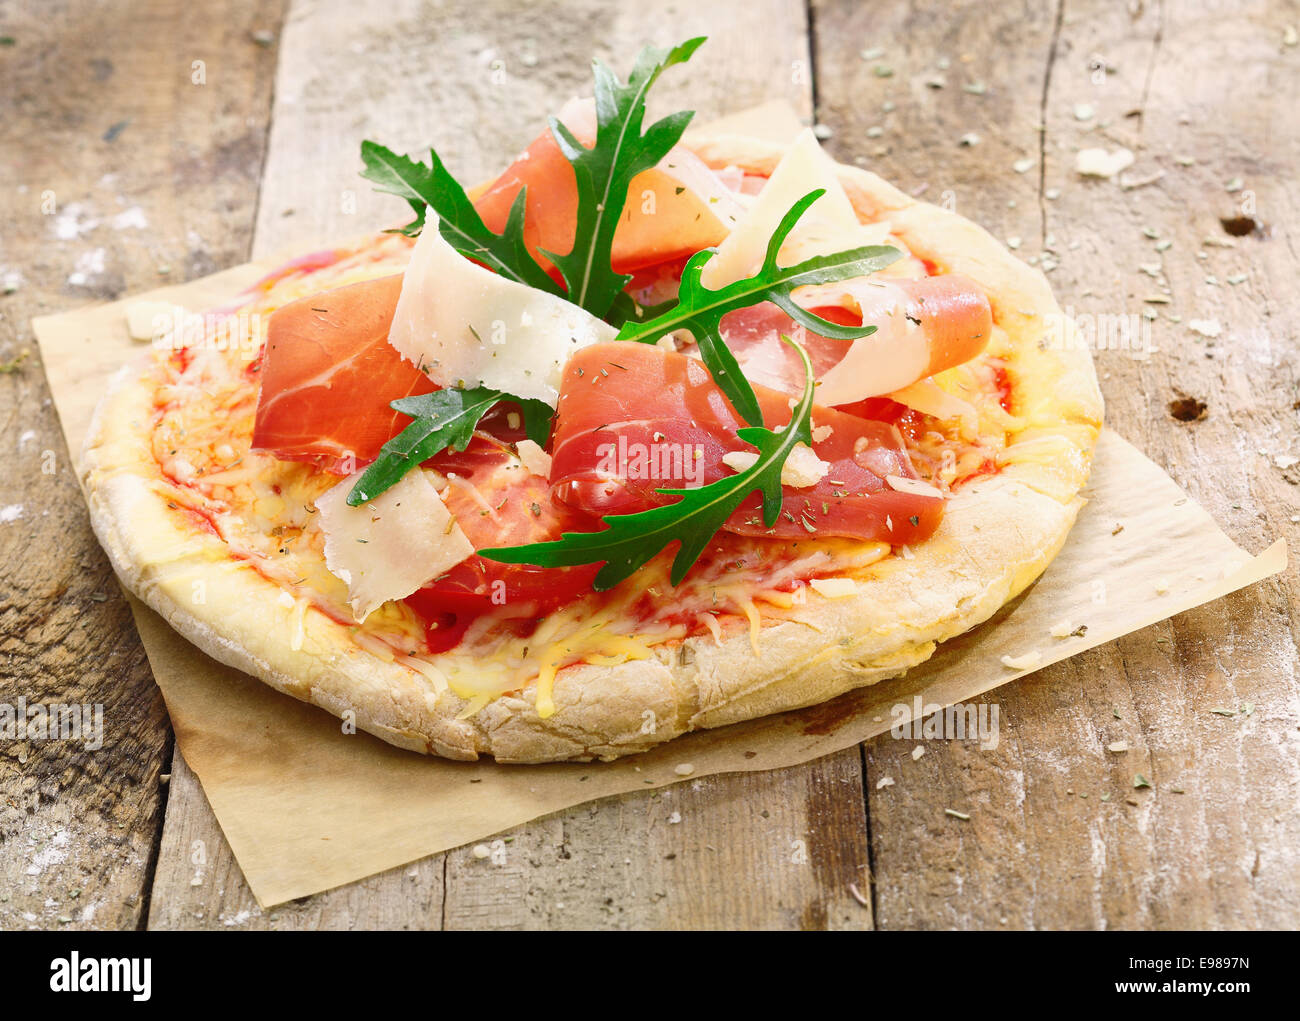 Frisch zubereitete leckere Pizza auf dem Ofen Papier mit einem goldenen Sockel mit leckeren Schinken, Käse, Tomaten und frischen grünen Kräutern garniert Stockfoto